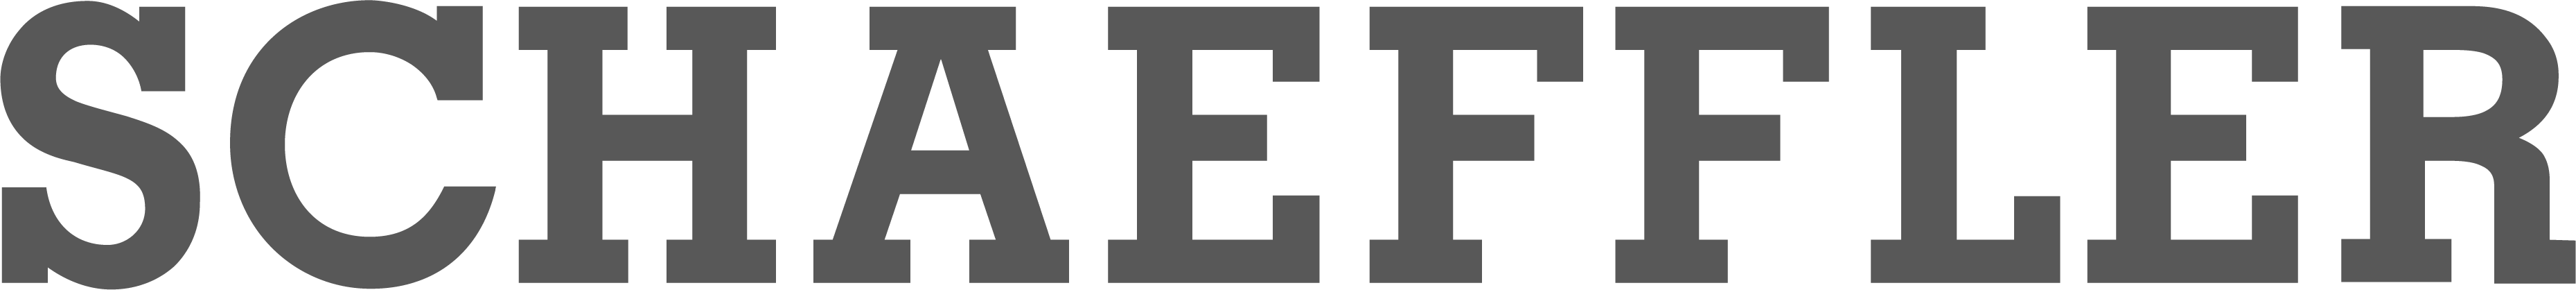 Logo from Schaeffler in gray